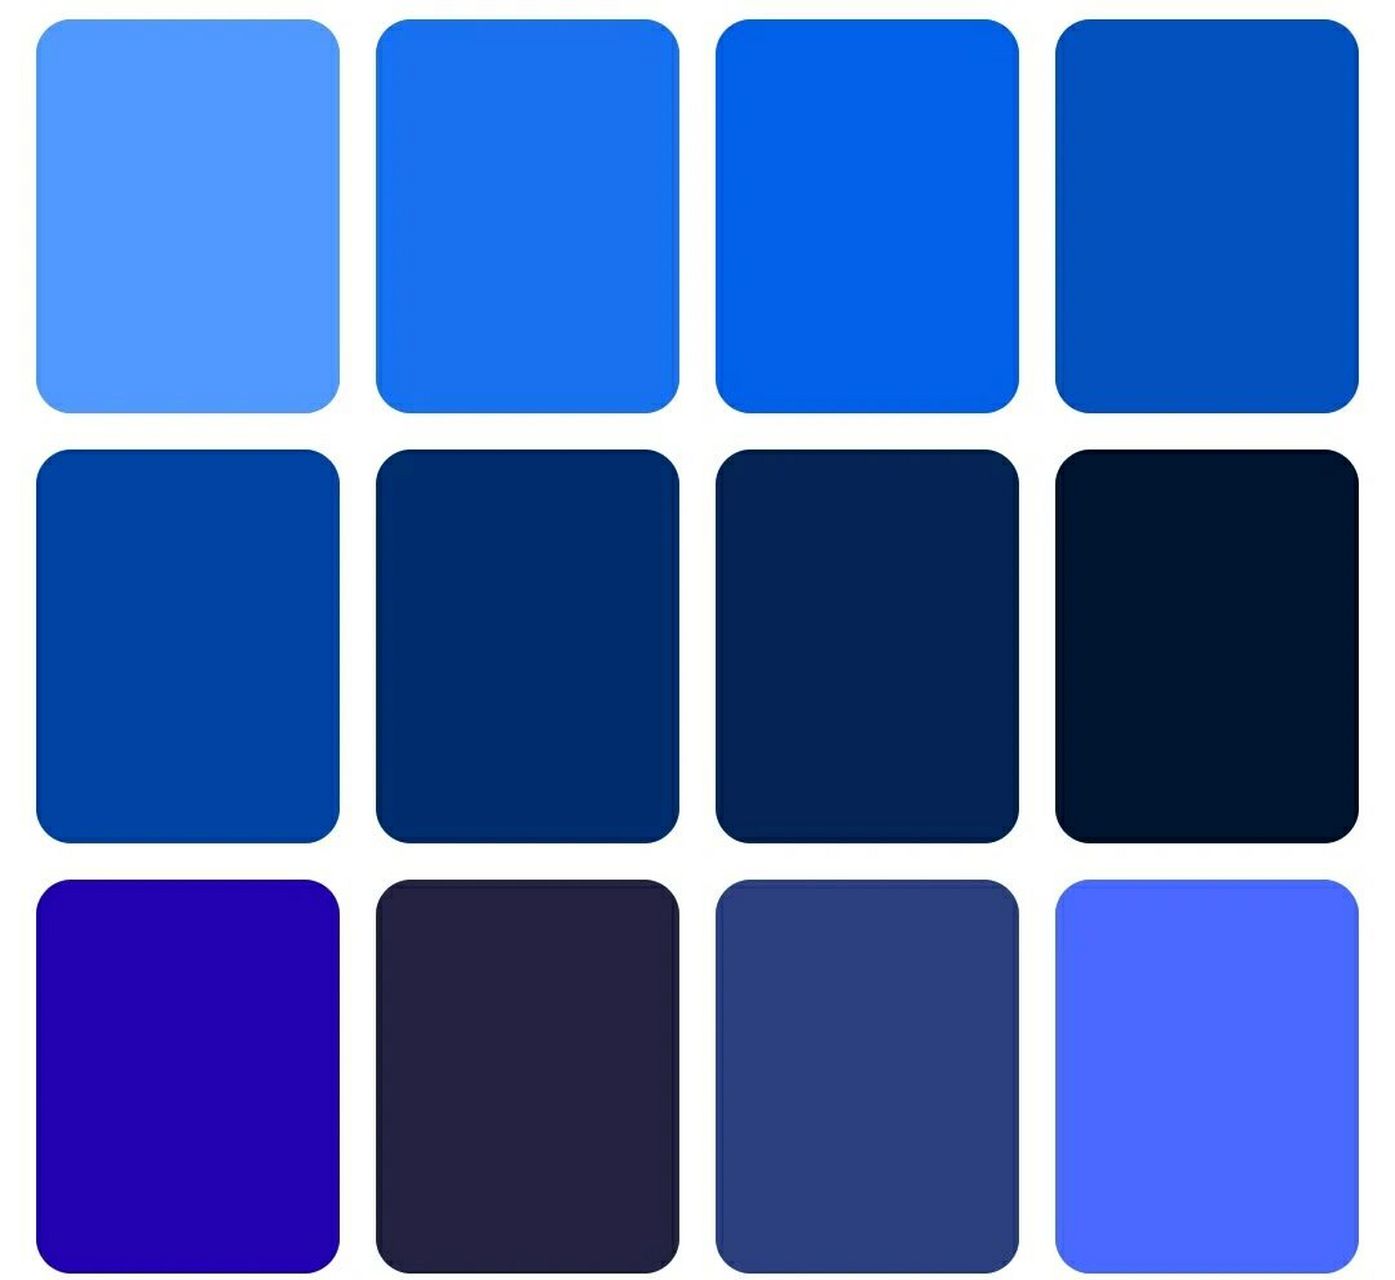 一组克莱因蓝色纯色底图分享91 克莱因蓝色 克莱因蓝色的寓意是理想